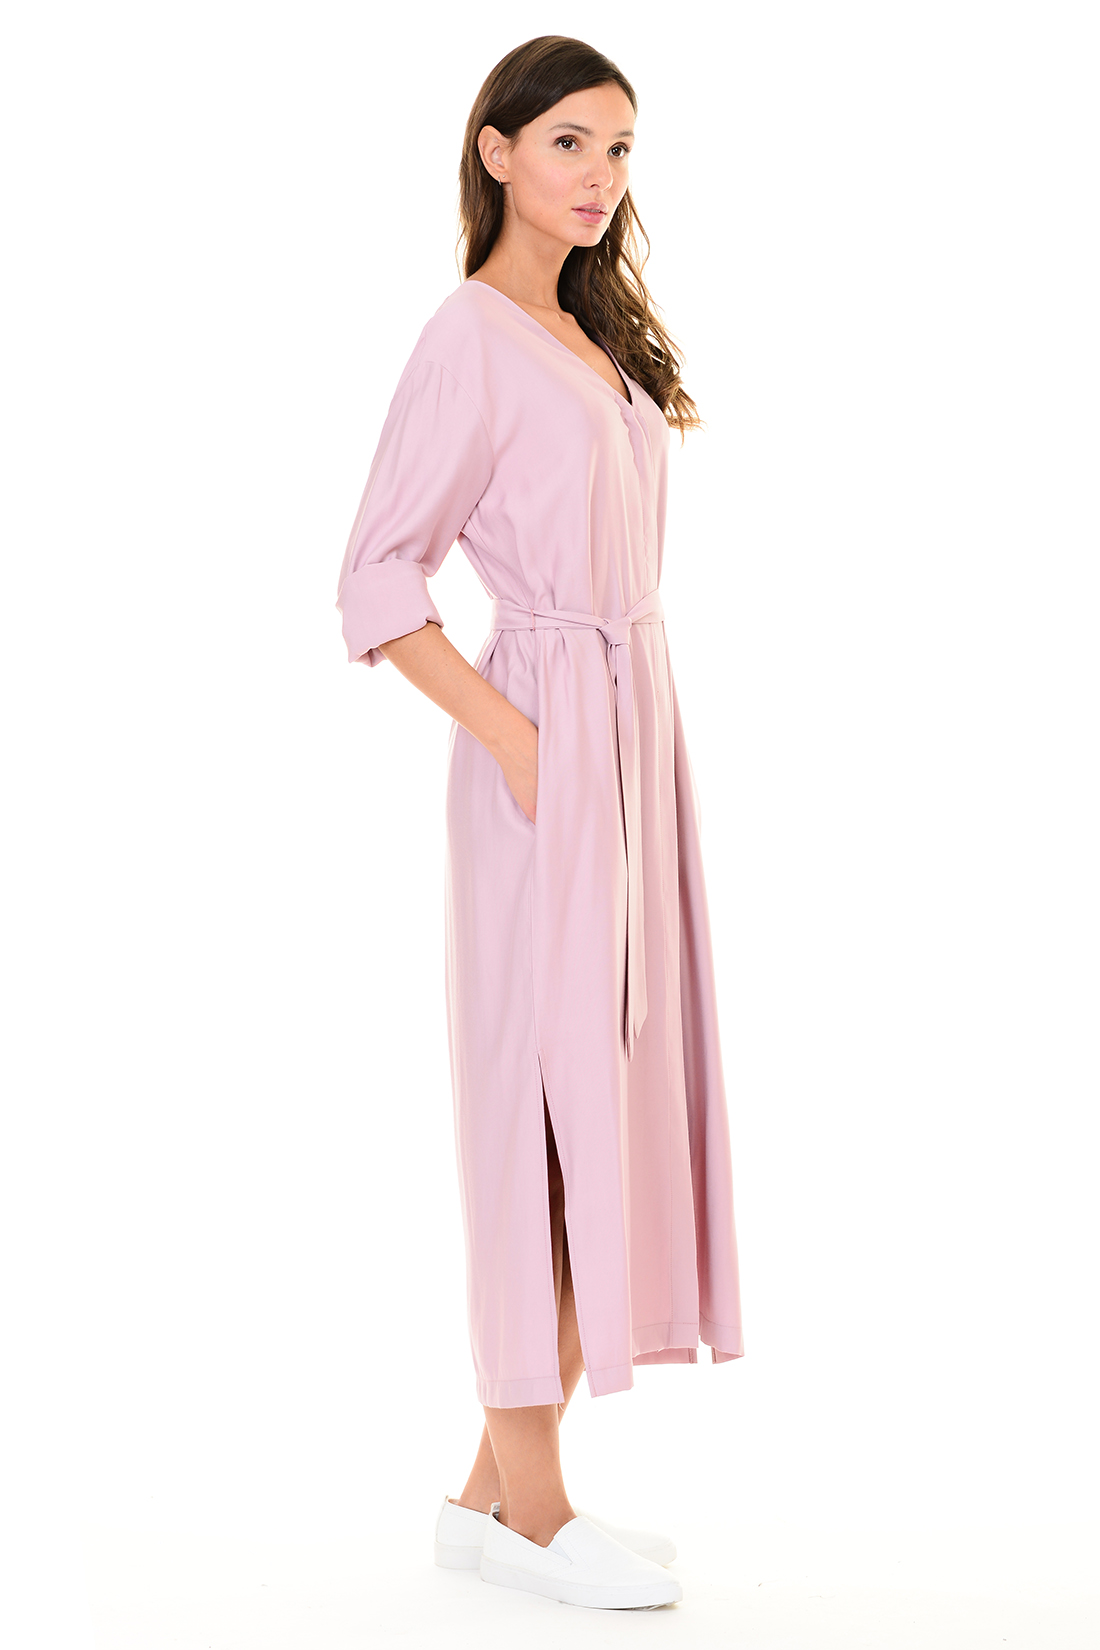 Платье с запахом (арт. baon B457106), размер S, цвет розовый Платье с запахом (арт. baon B457106) - фото 4